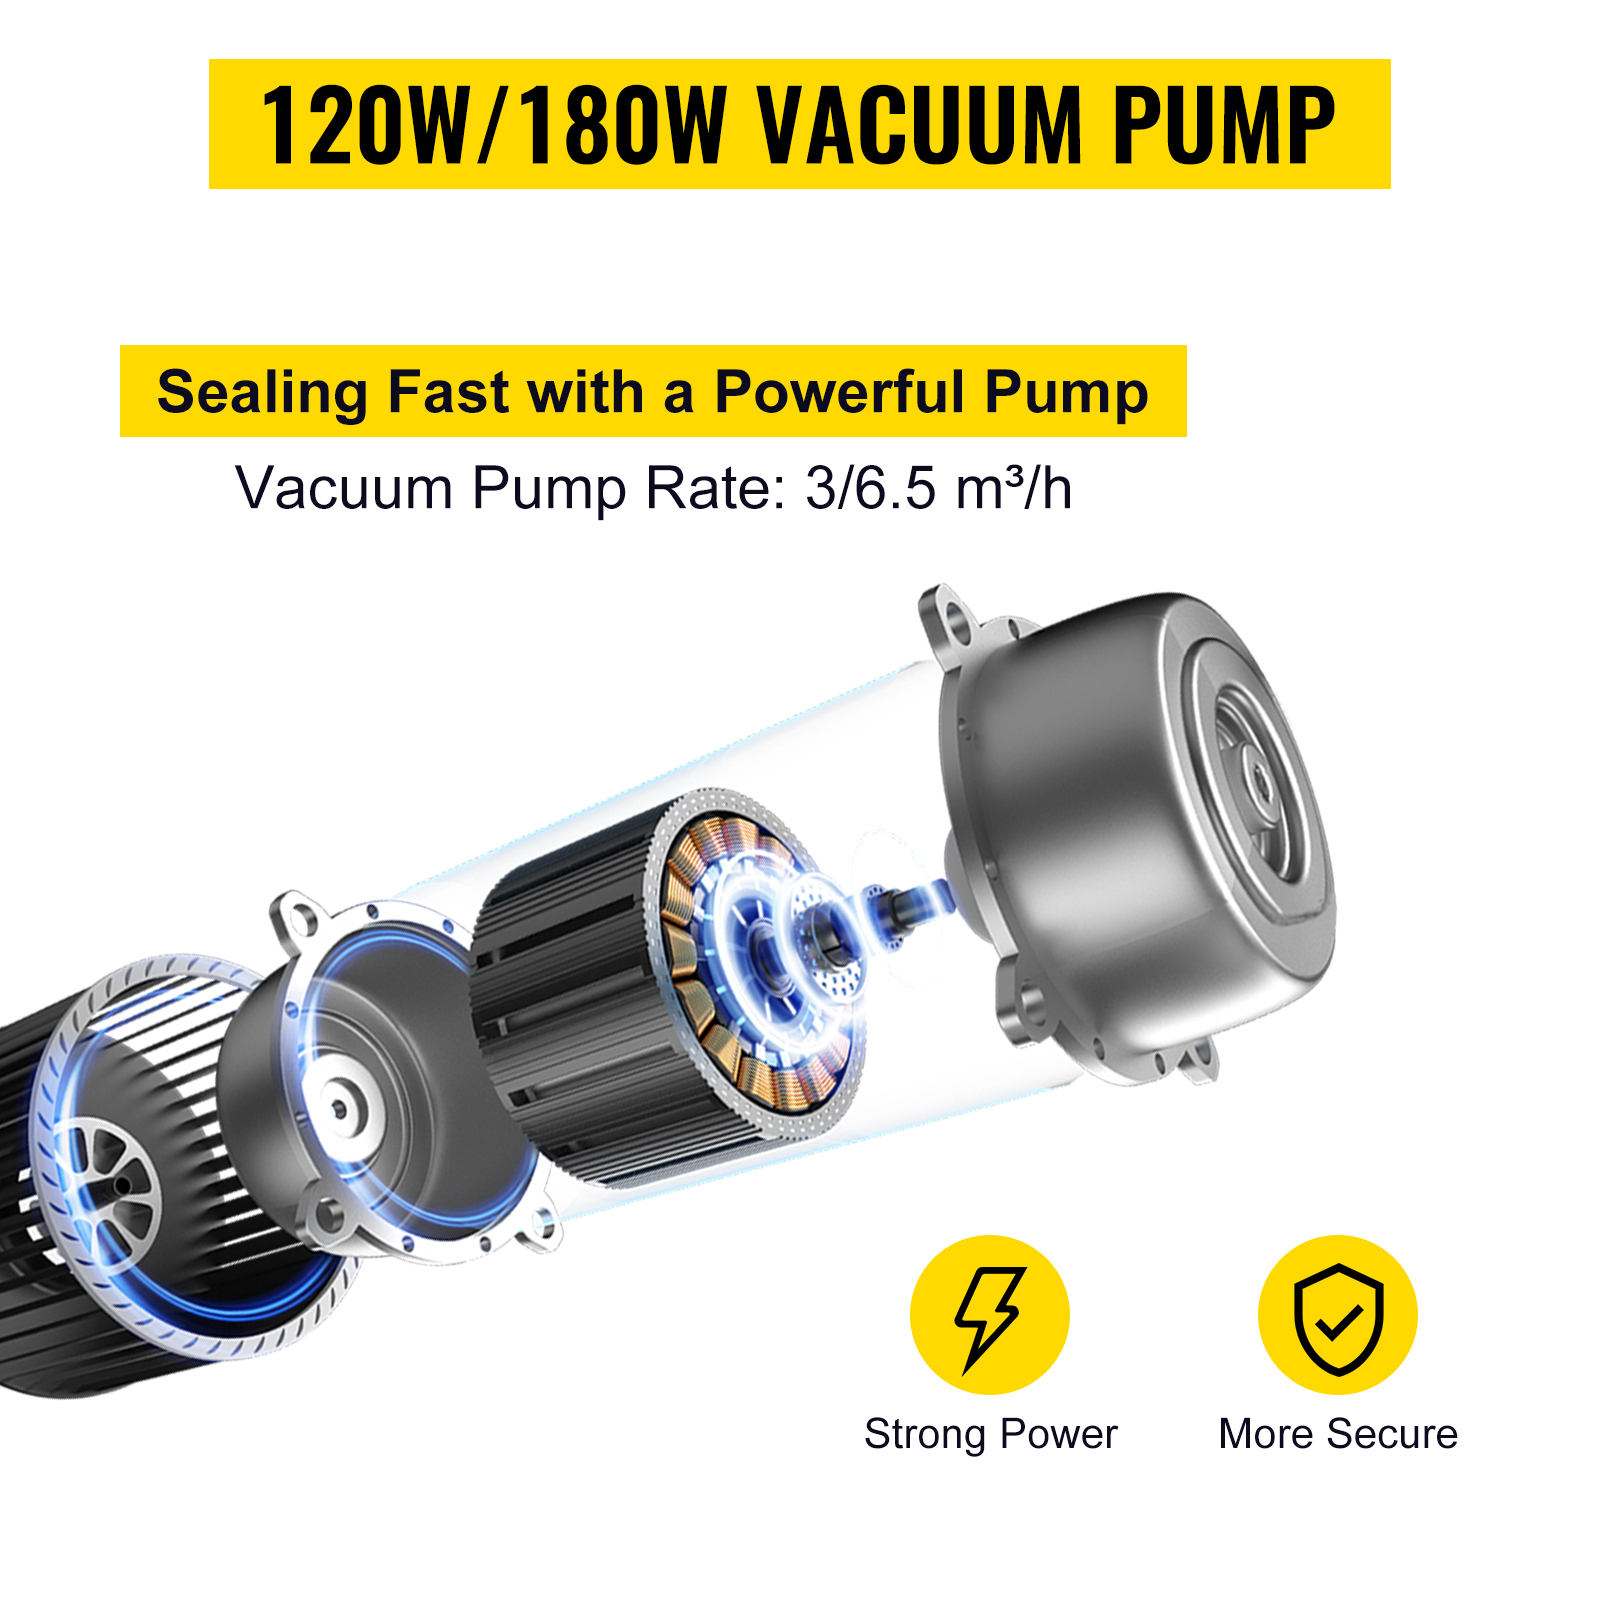  VEVOR Chamber Vacuum Sealer, DZ-260A 6.5 m³/h Pump